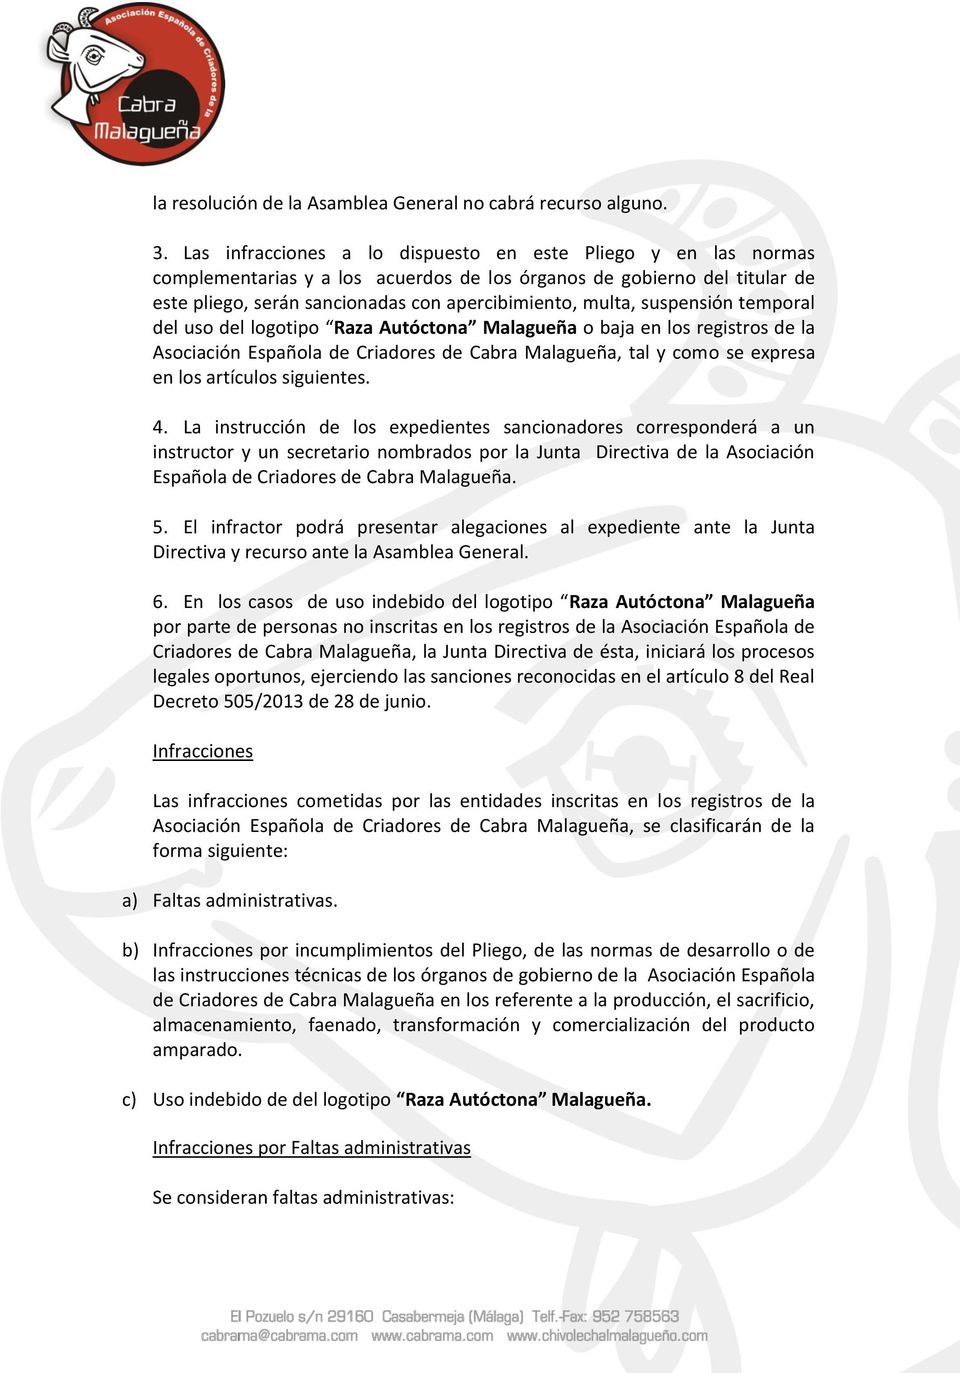 suspensión temporal del uso del logotipo Raza Autóctona Malagueña o baja en los registros de la Asociación Española de Criadores de Cabra Malagueña, tal y como se expresa en los artículos siguientes.